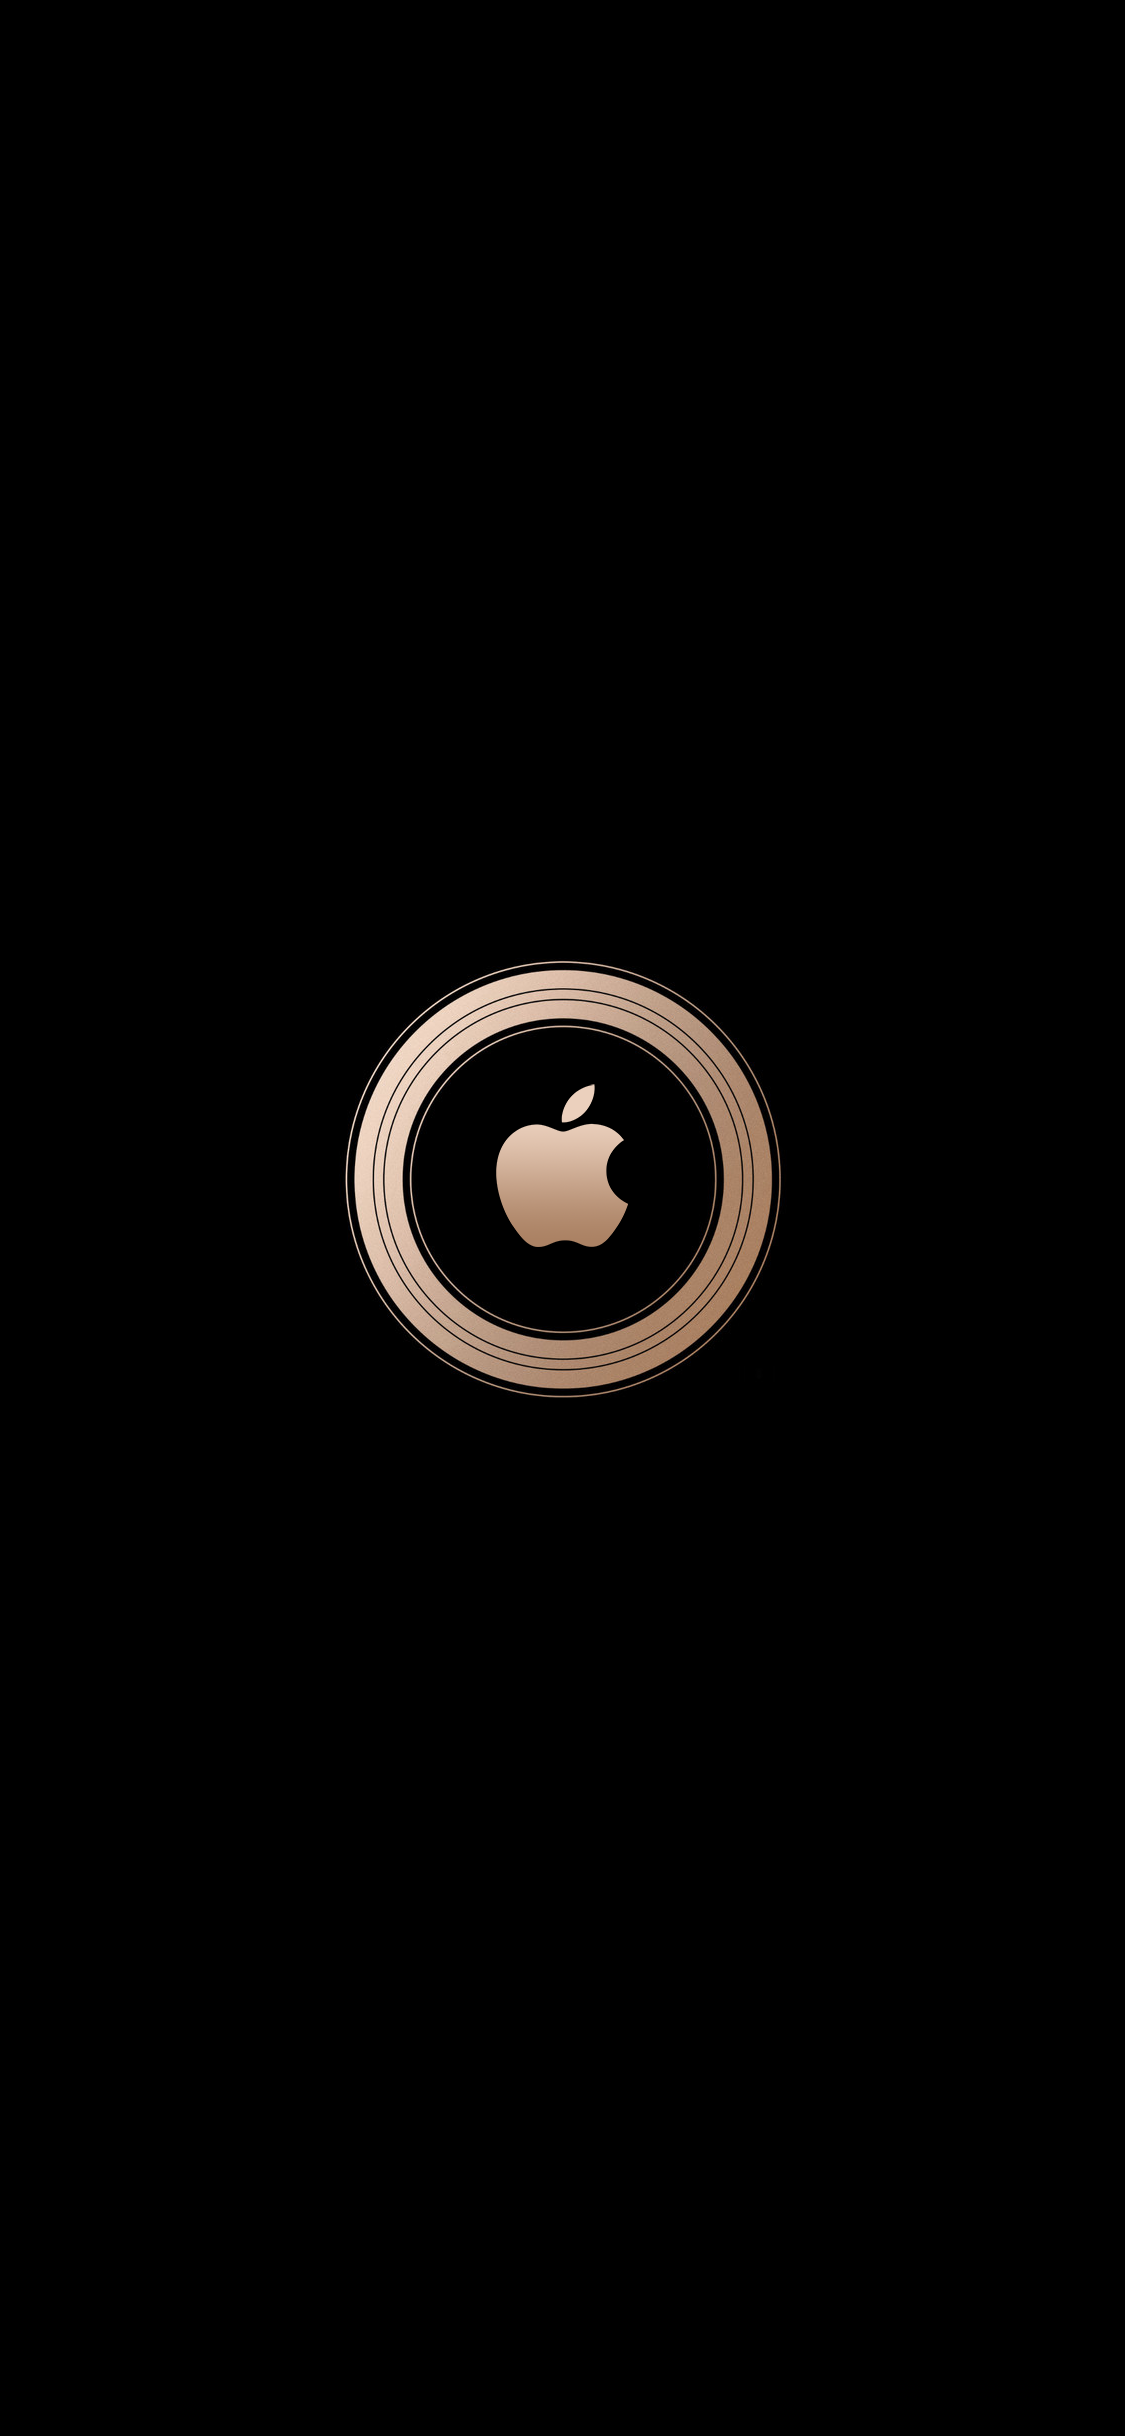 Golden Apple Logo Wallpaper Free Golden Apple Logo Background